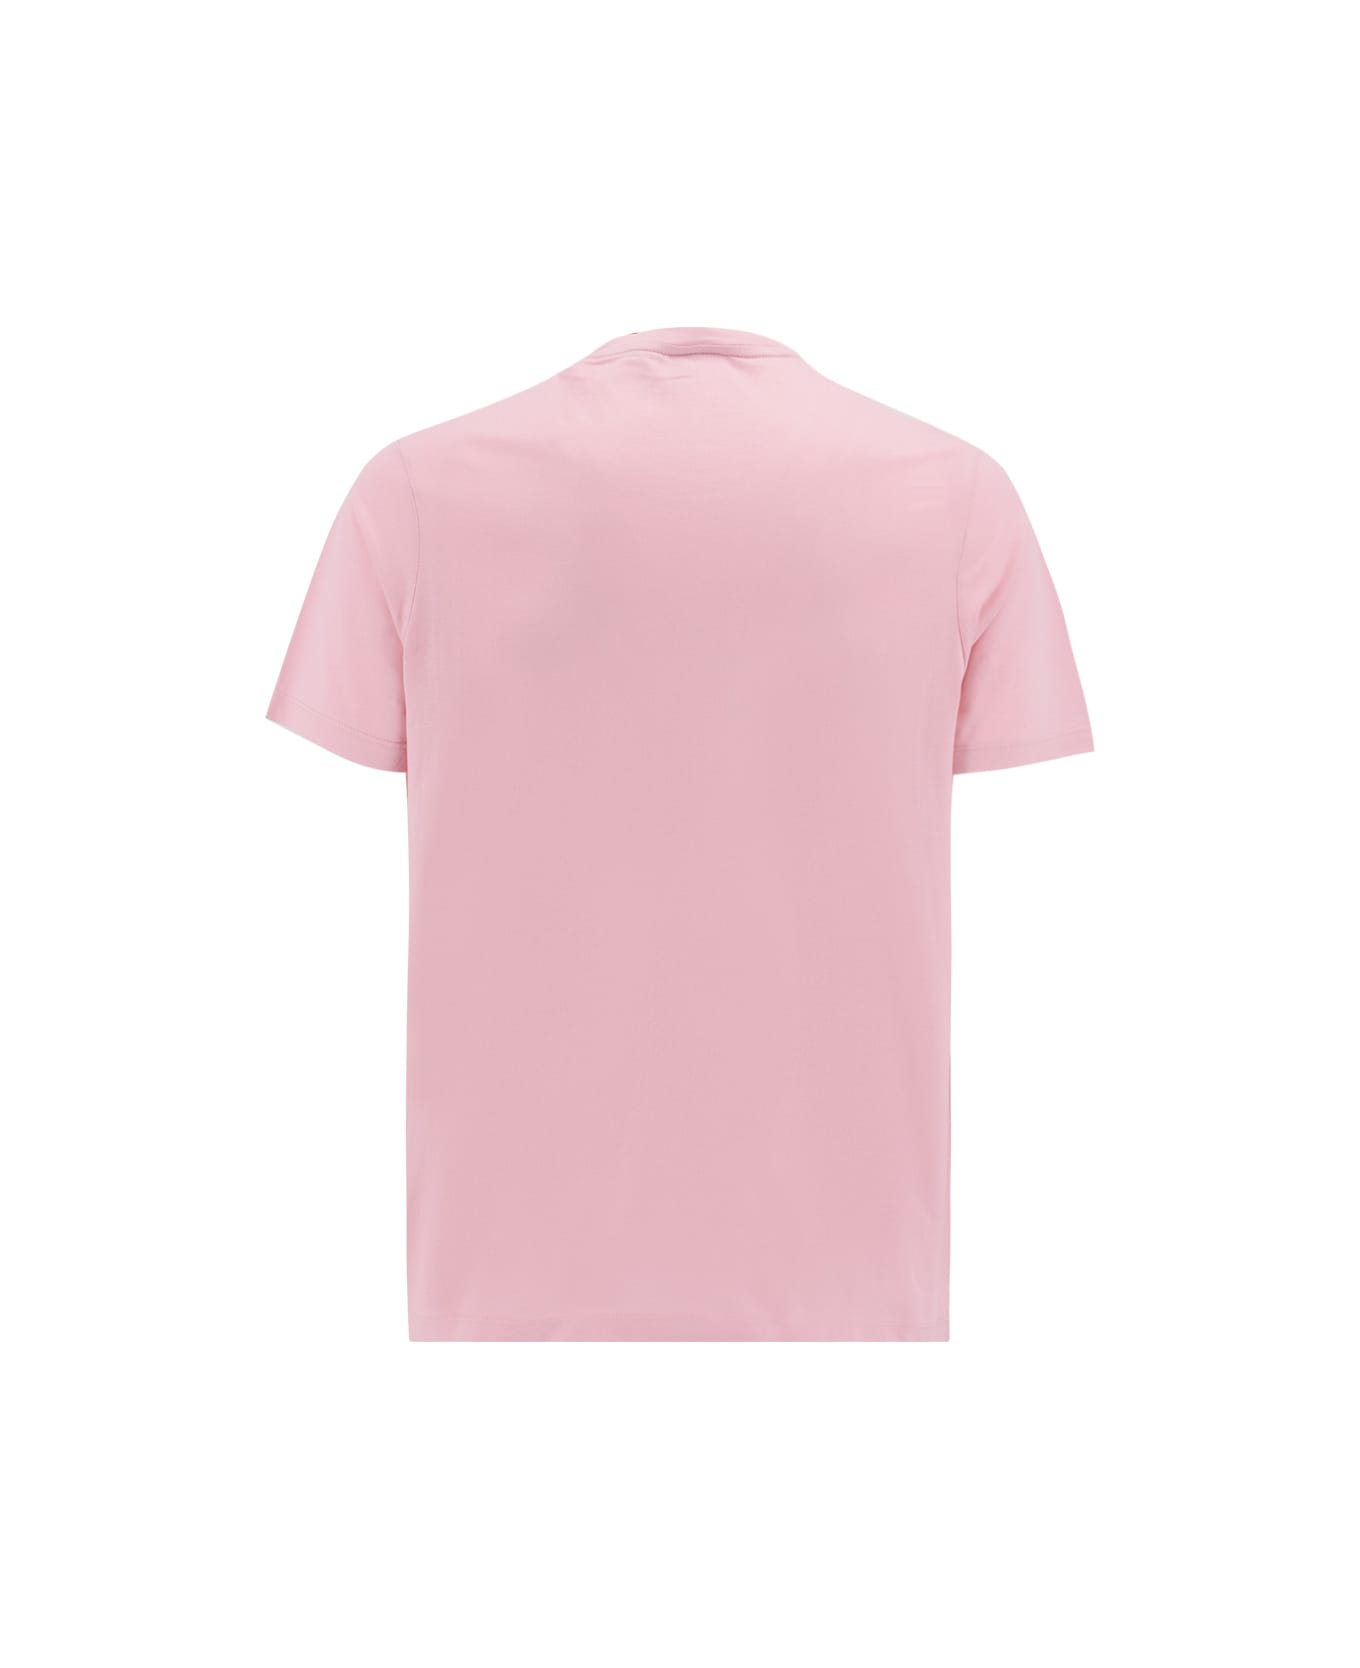 Paul&Shark T-shirt - LIGHT ROSE